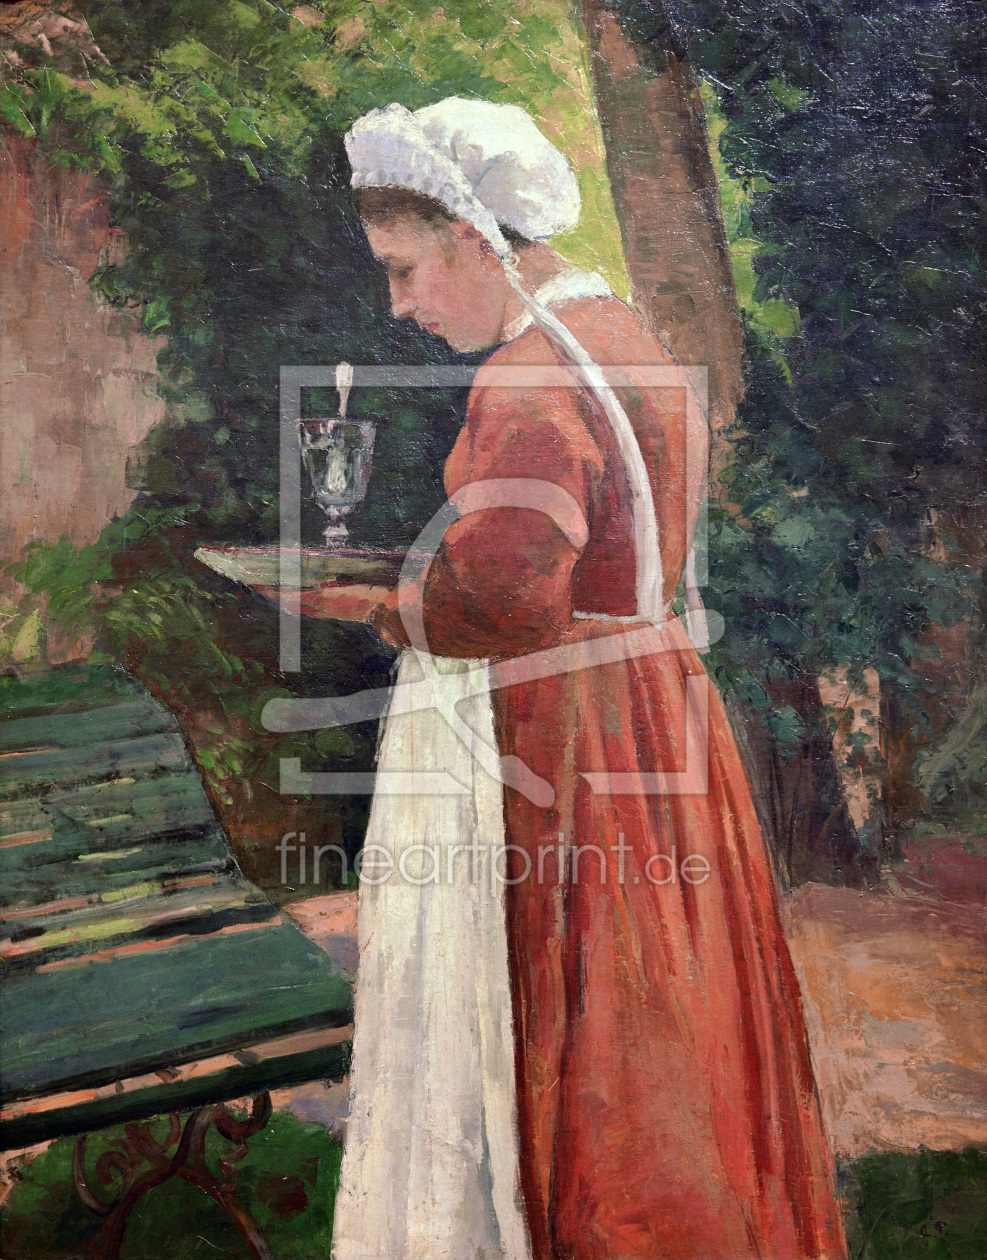 Bild-Nr.: 30006242 Pissarro / The Maid / 1867 erstellt von Pissarro, Camille